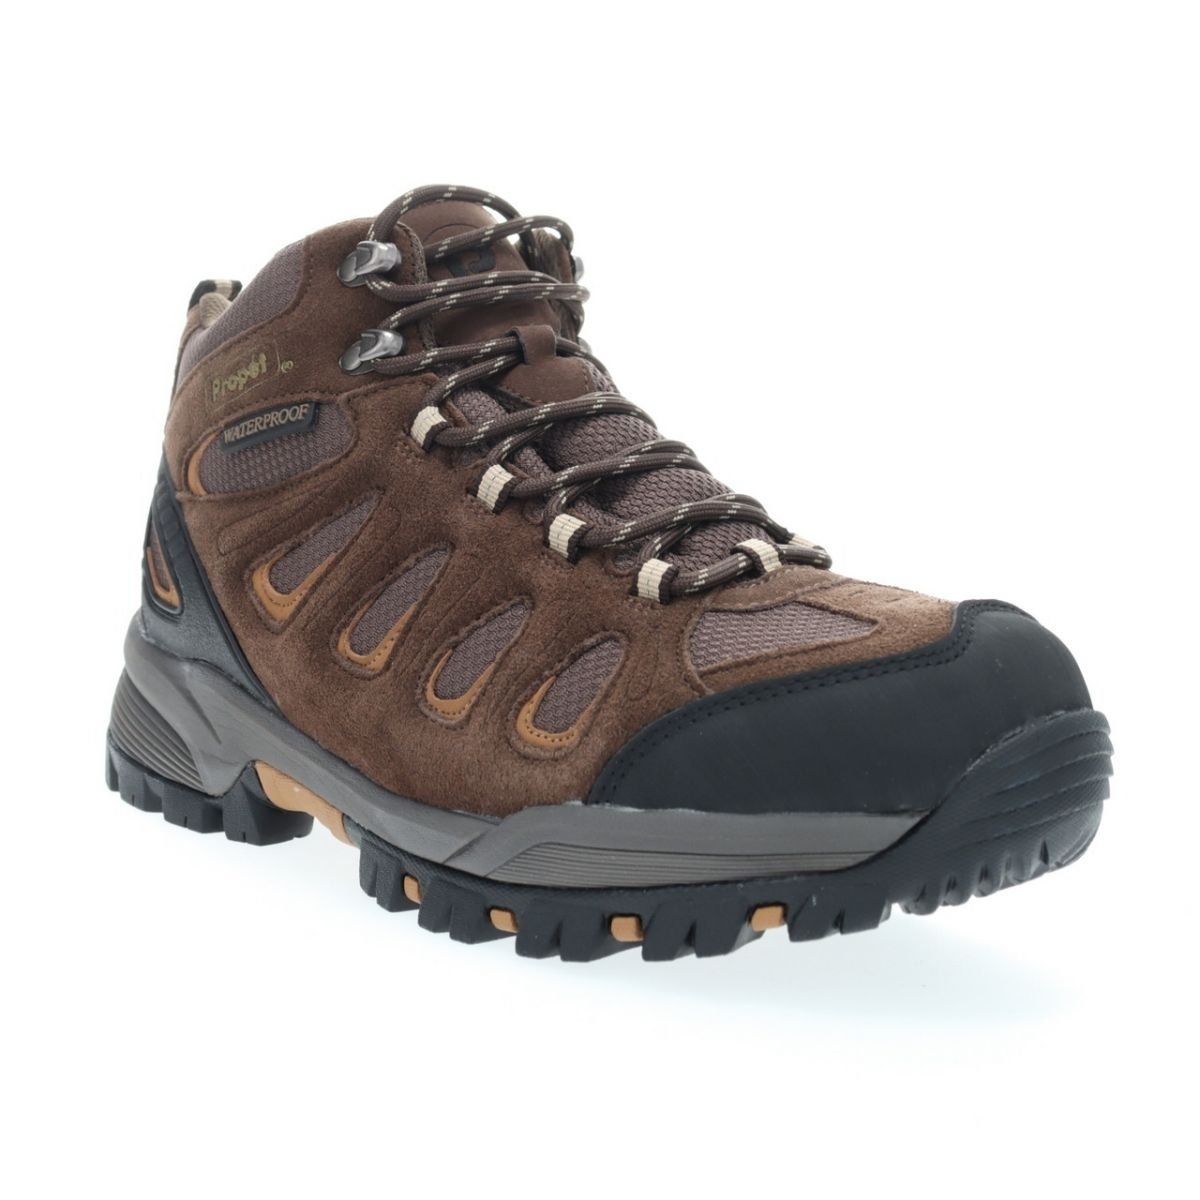 Propet Men's Ridge Walker Hiking Boot Brown - M3599BR 8 XX US Men BROWN - BROWN, 10.5